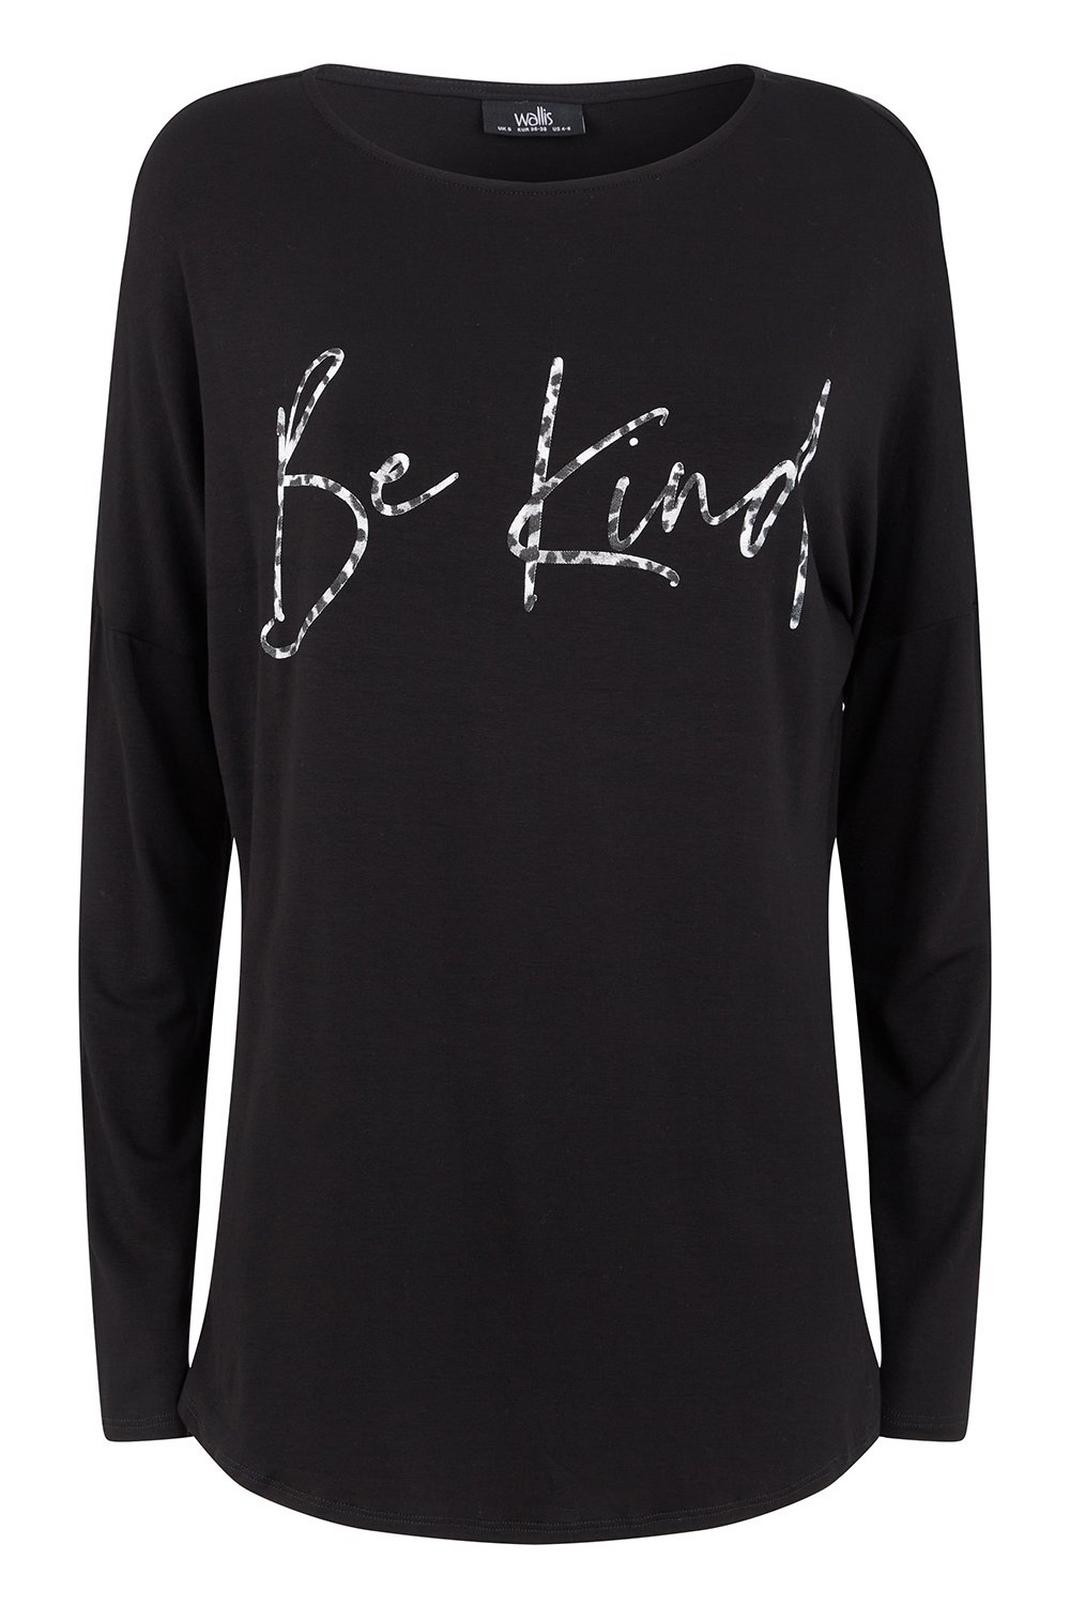 105 Black 'Be Kind' Slogan Top image number 2